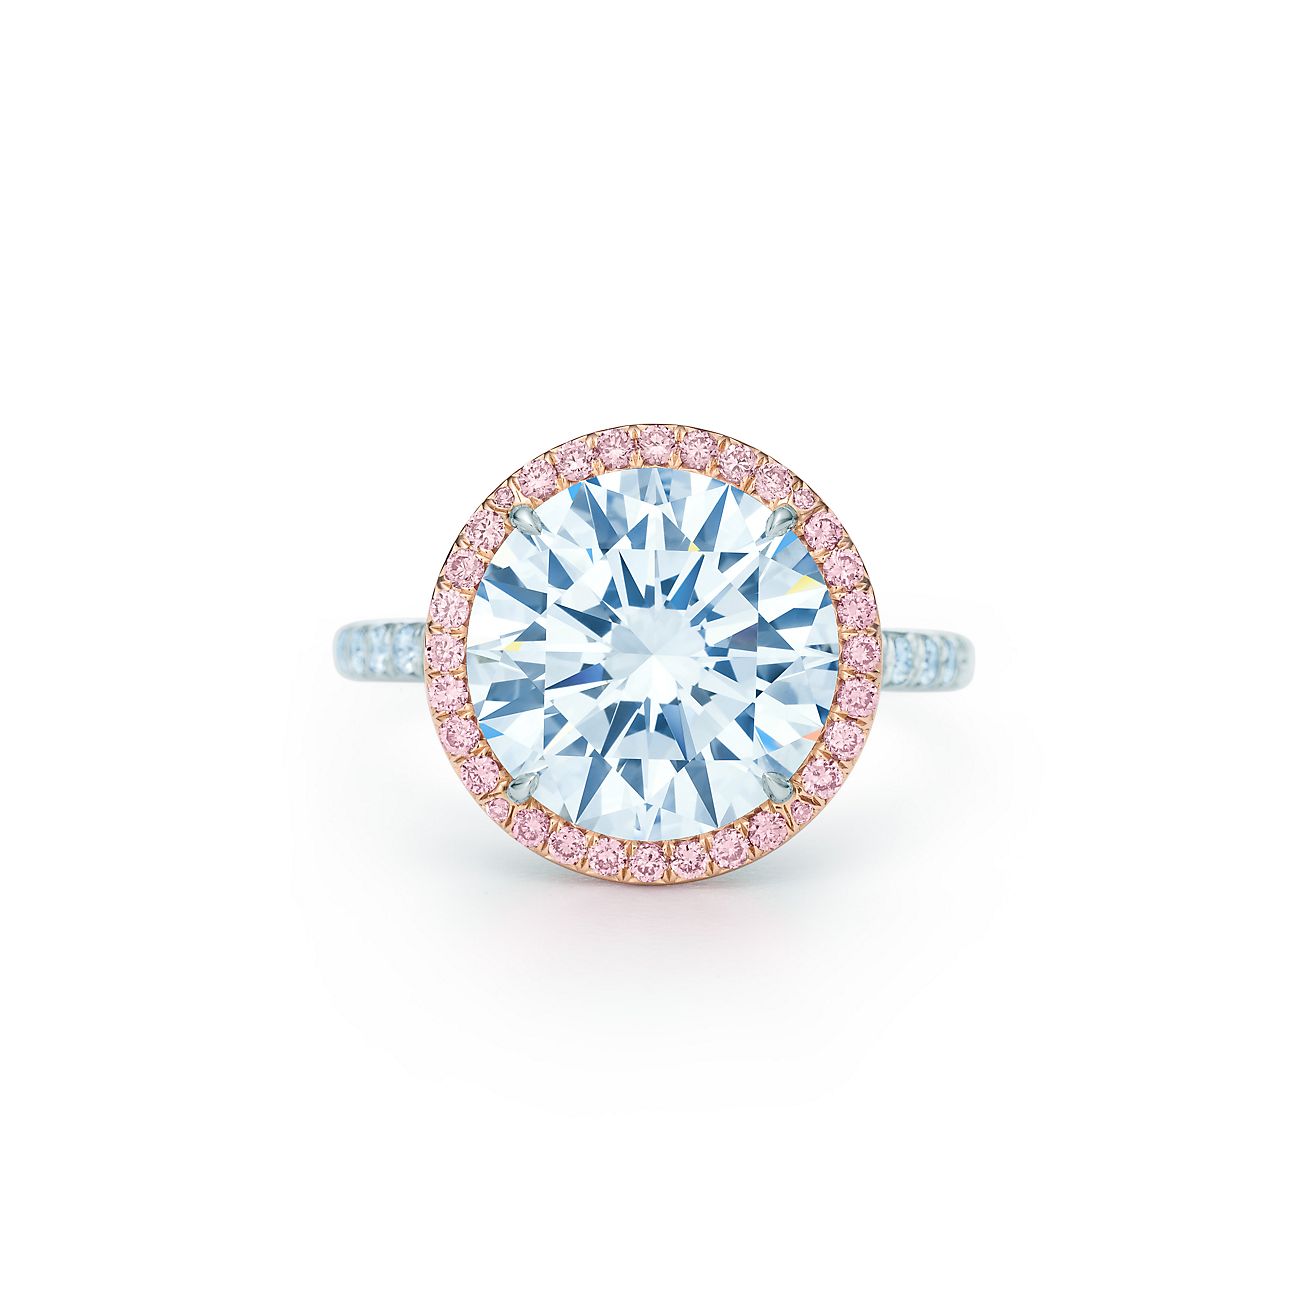 Tiffany Soleste diamond ring in 